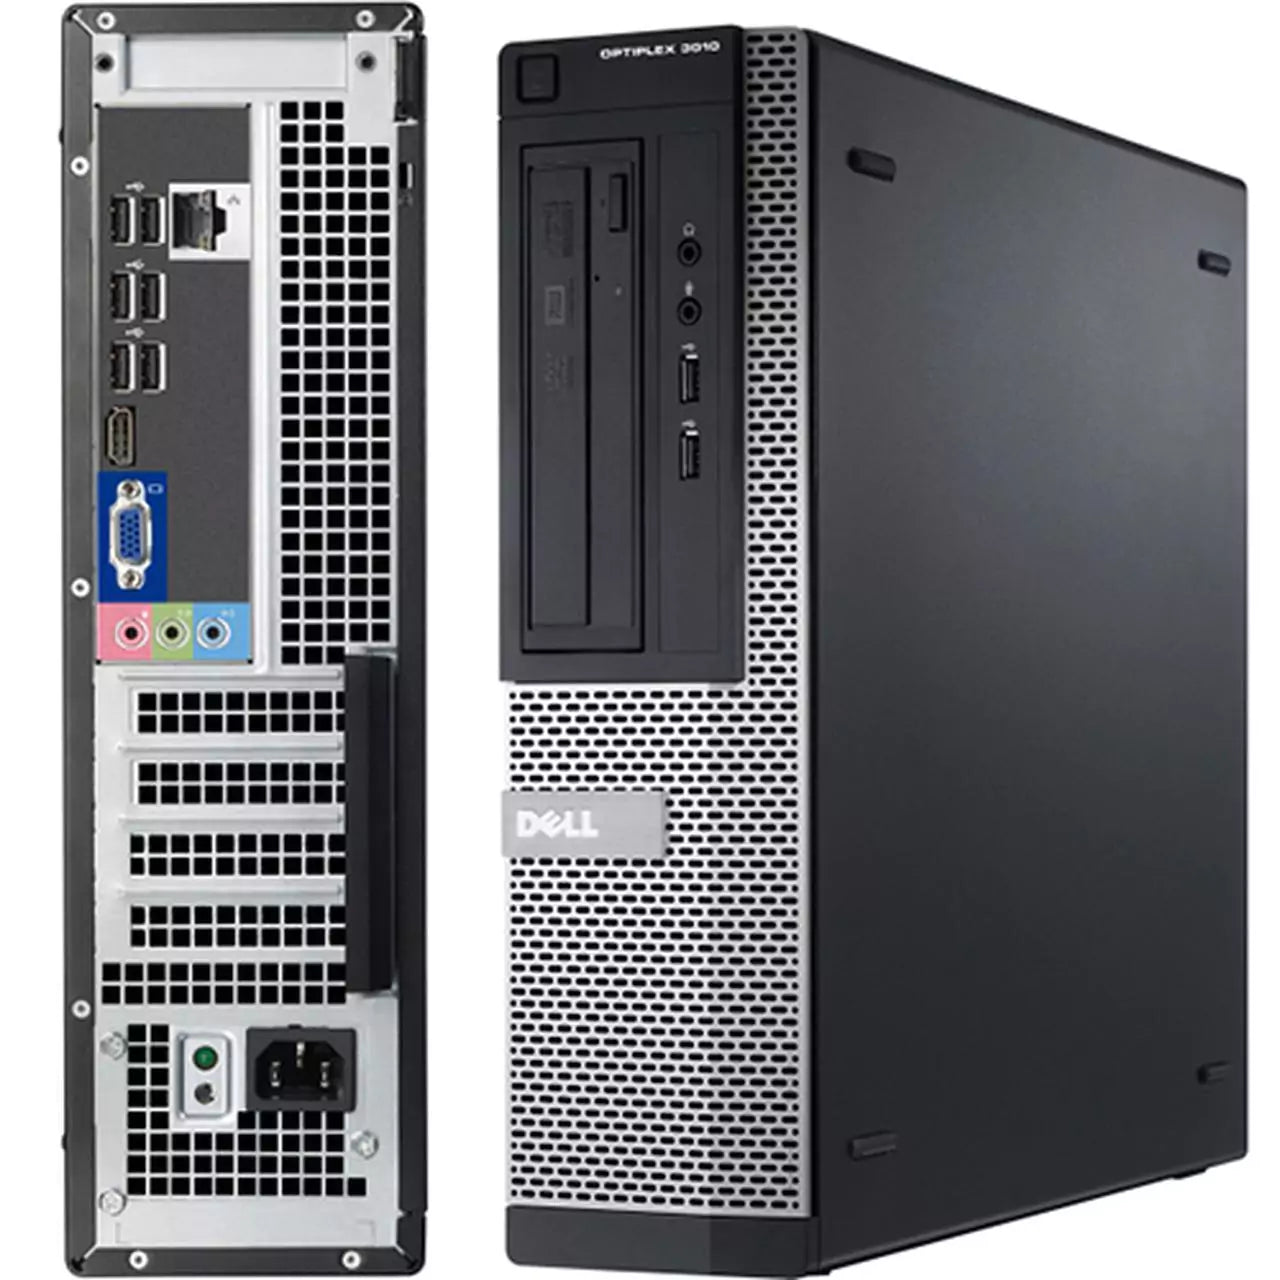 Dell Optiplex 3010 DT | Intel Core i5-3470 3,2 GHz | 8 GB RAM | SSD 256 GB | Windows 10 | Leistung und Erweiterbarkeit